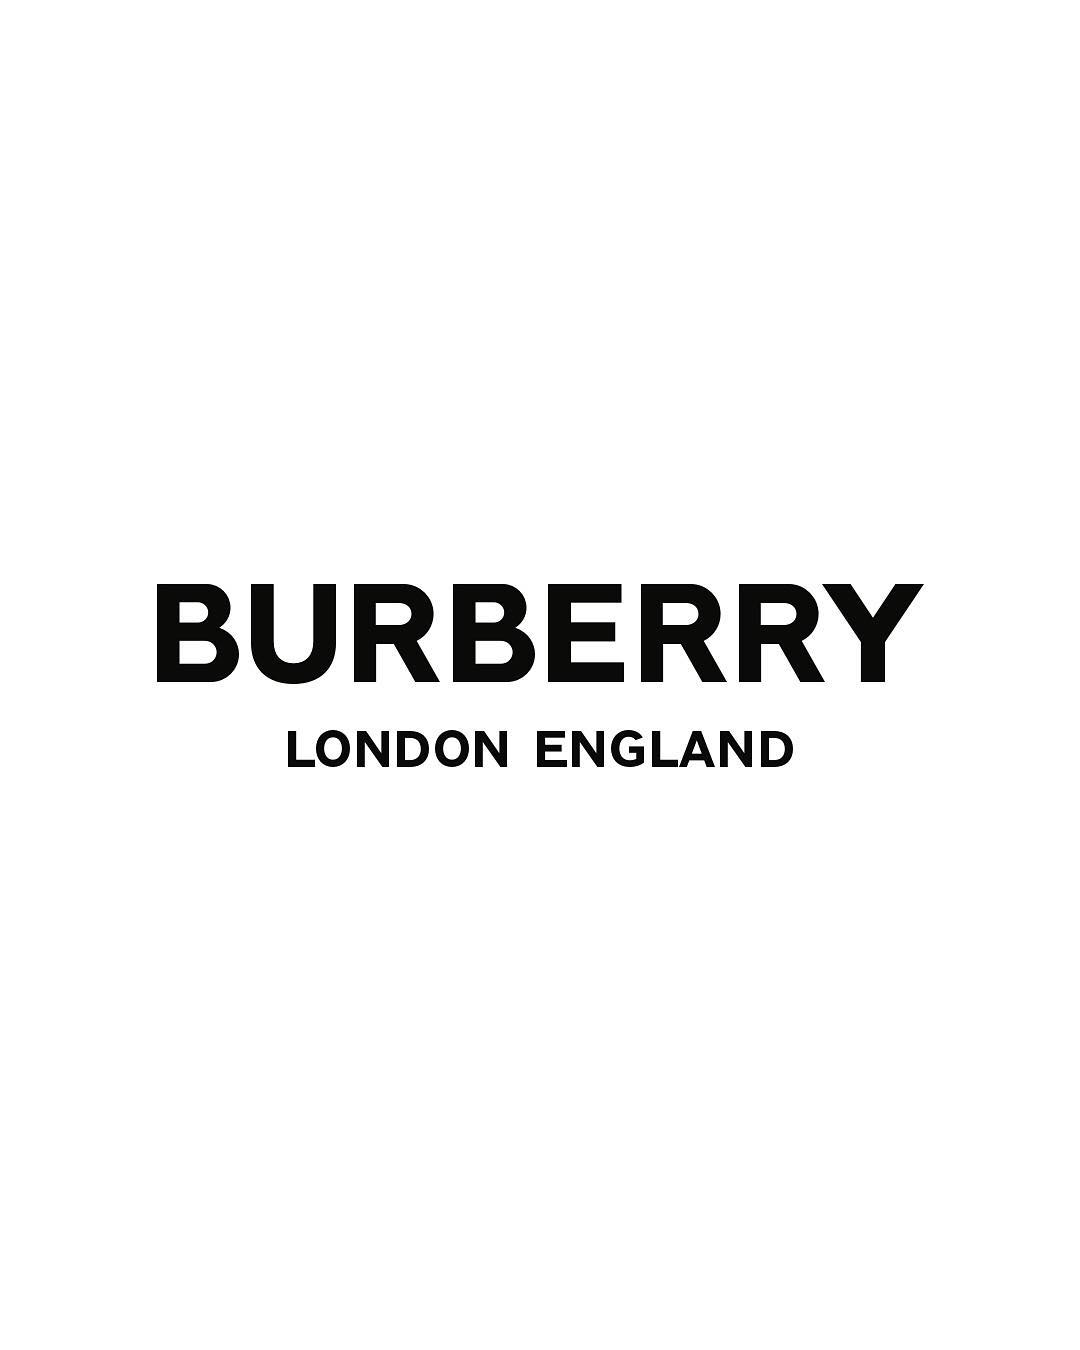 burberry  Burberry wallpaper Samsung wallpaper Burberry